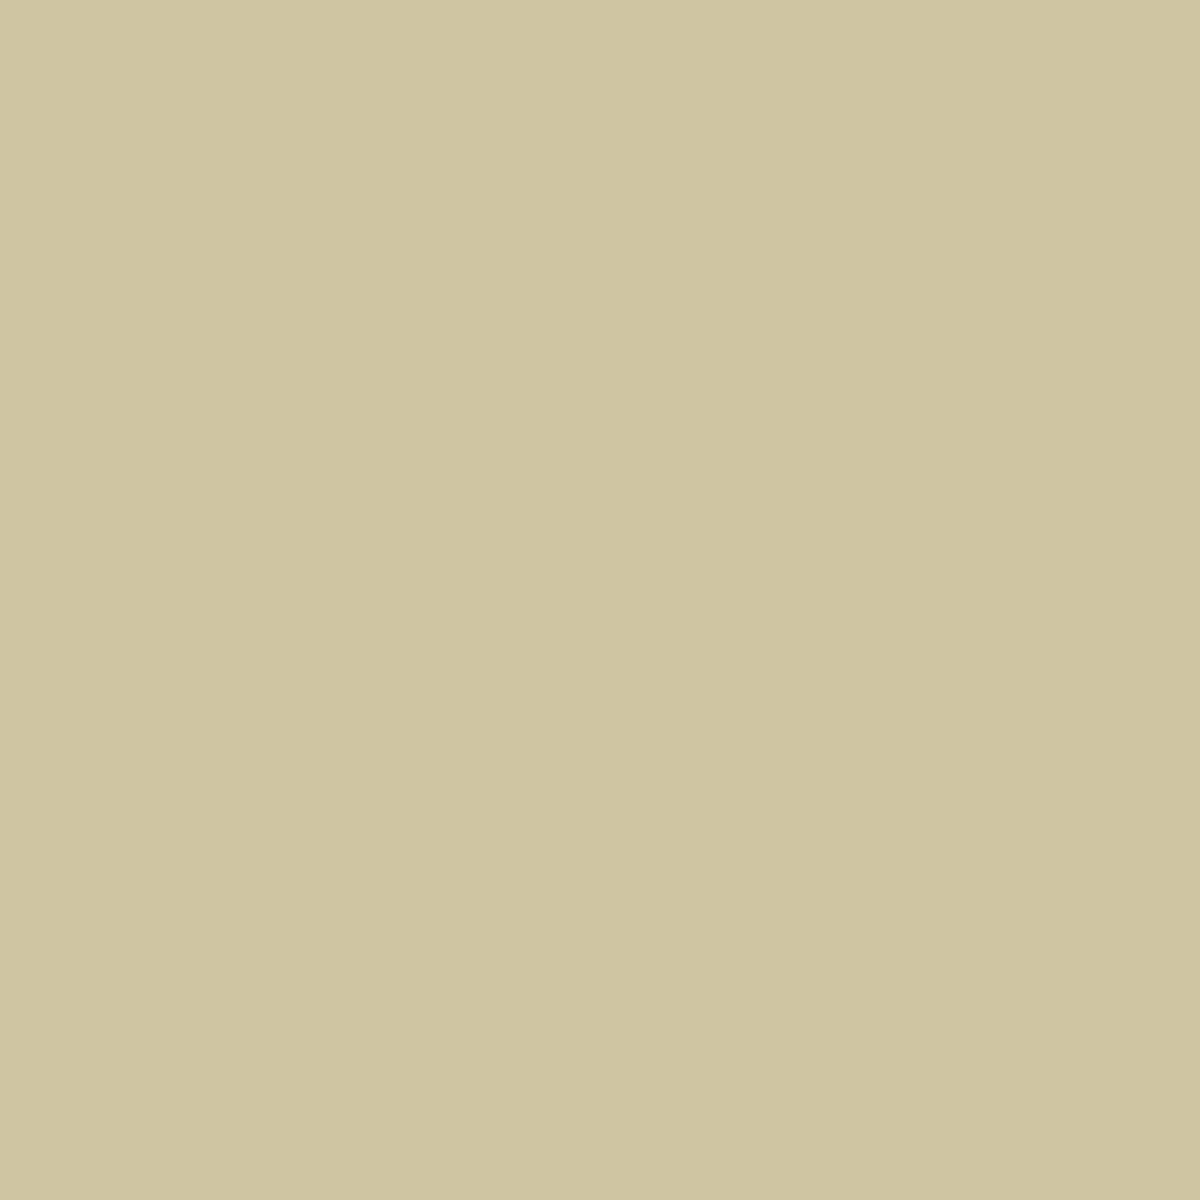 3M Scotchcal Pellicola colorata traslucida 3630-005 Avorio 1,22 m x 45,7 m